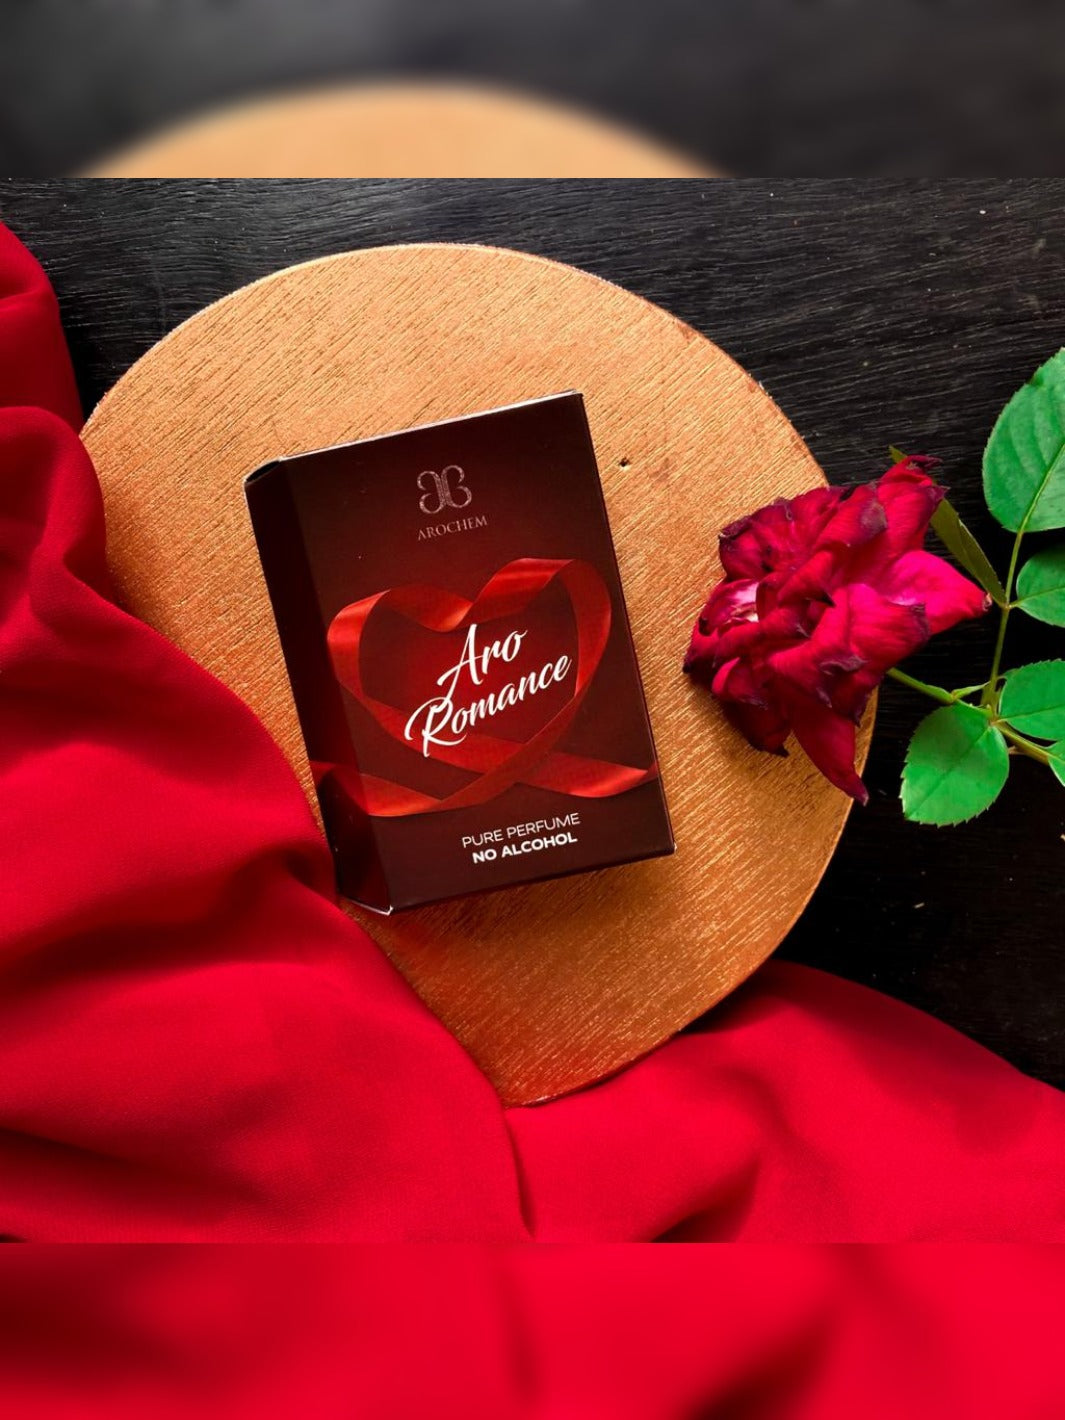 aro romance perfume pack.